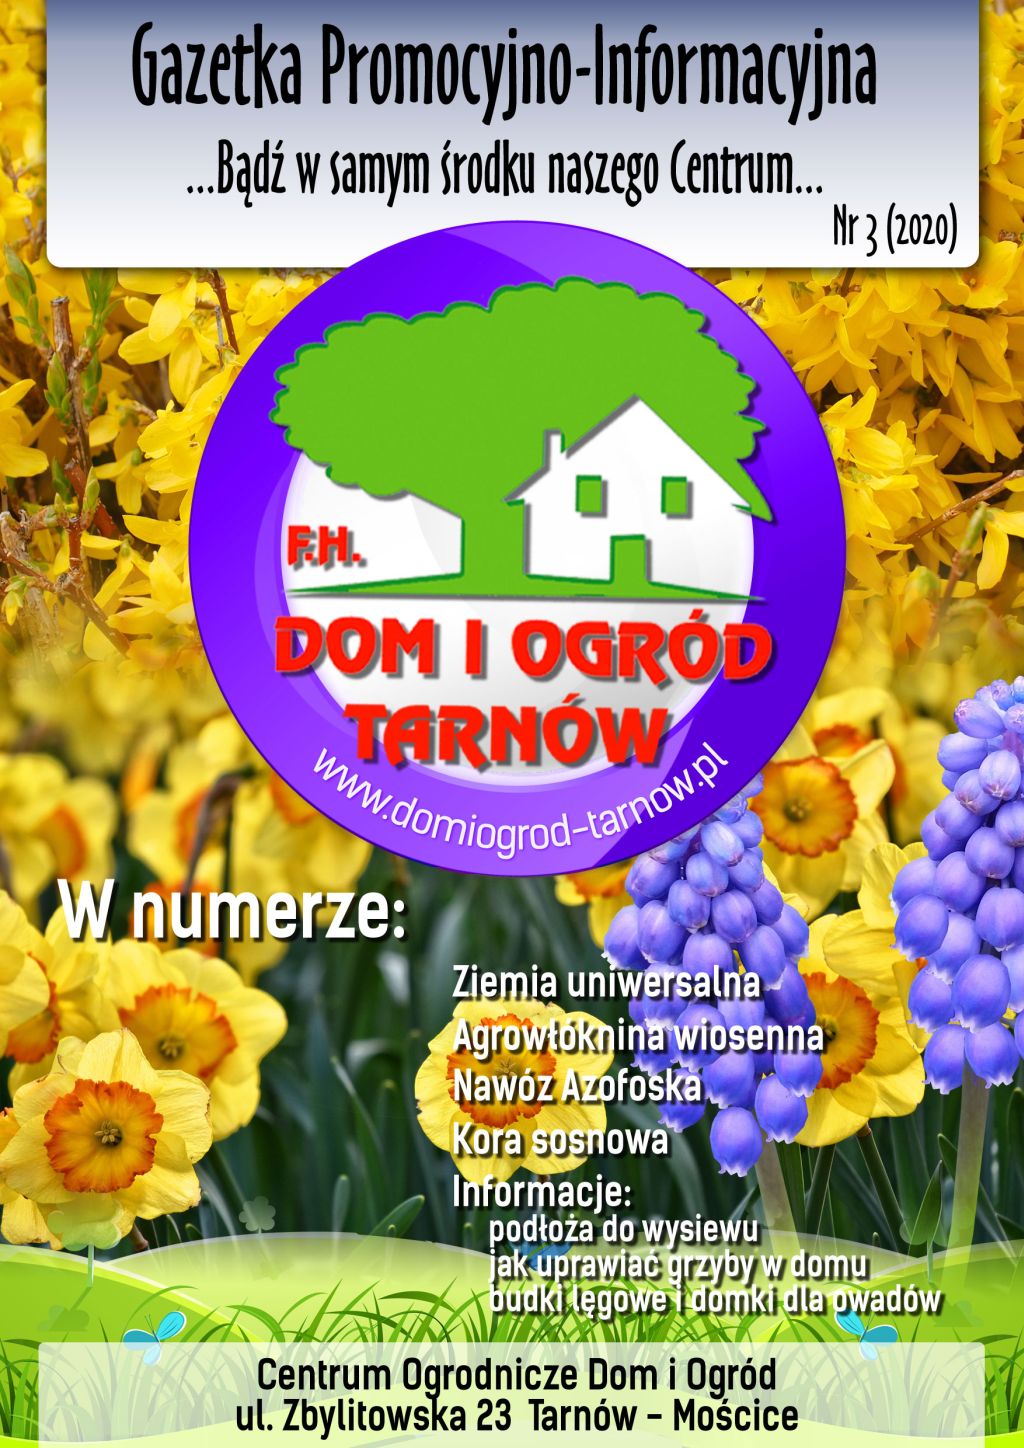 Gazetka Promocyjno-Informacyjna - 03/2020